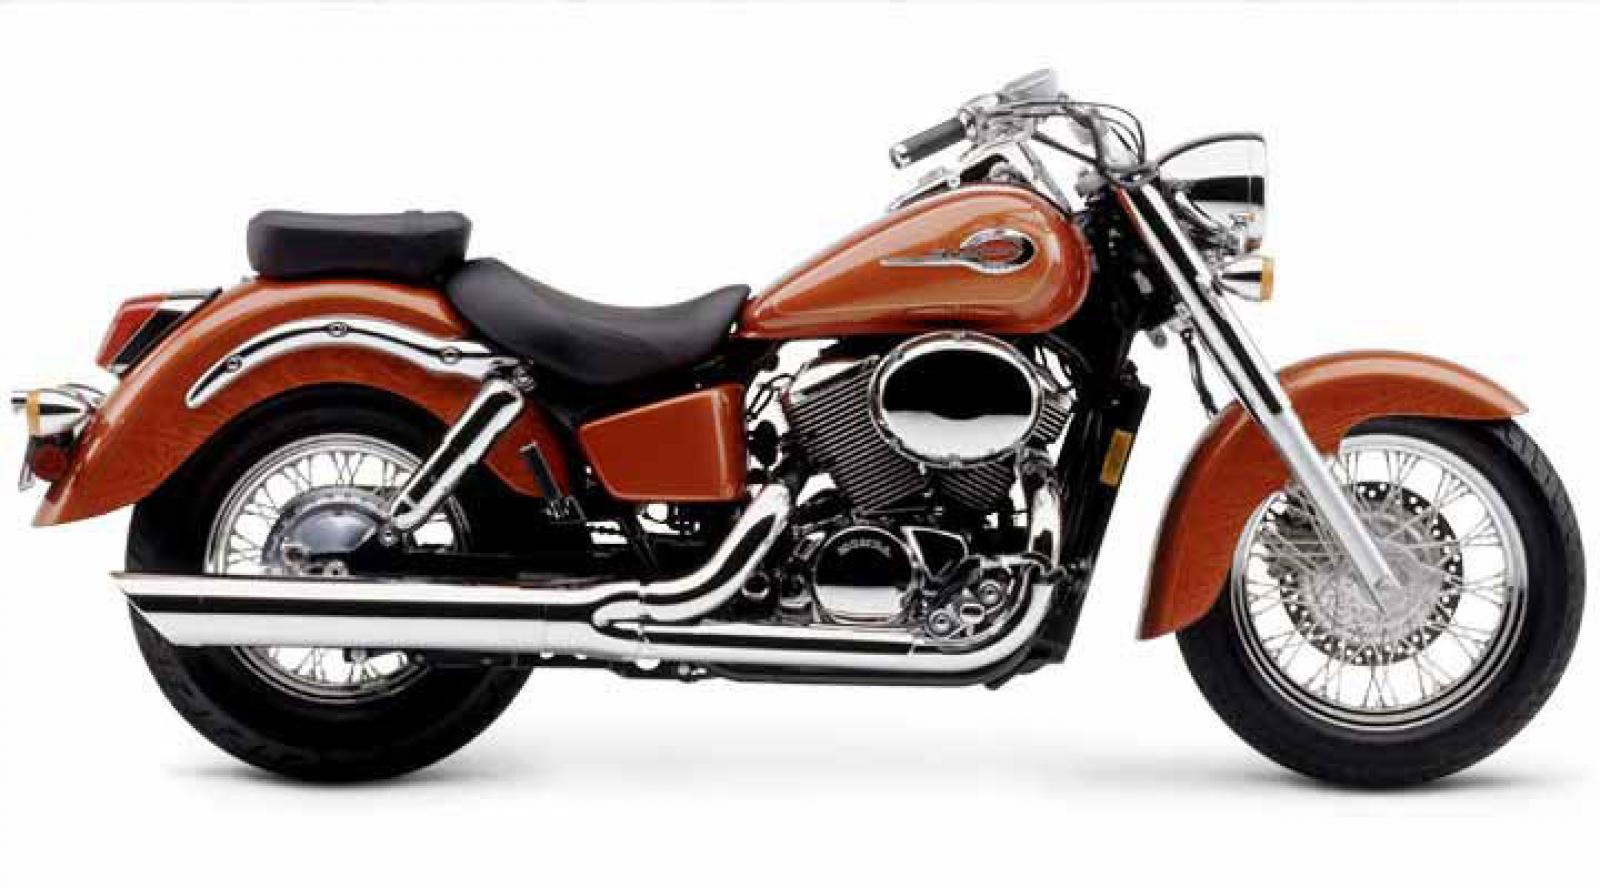 Мотоцикл honda vt 750 c2 shadow 2003 - описываем по порядку